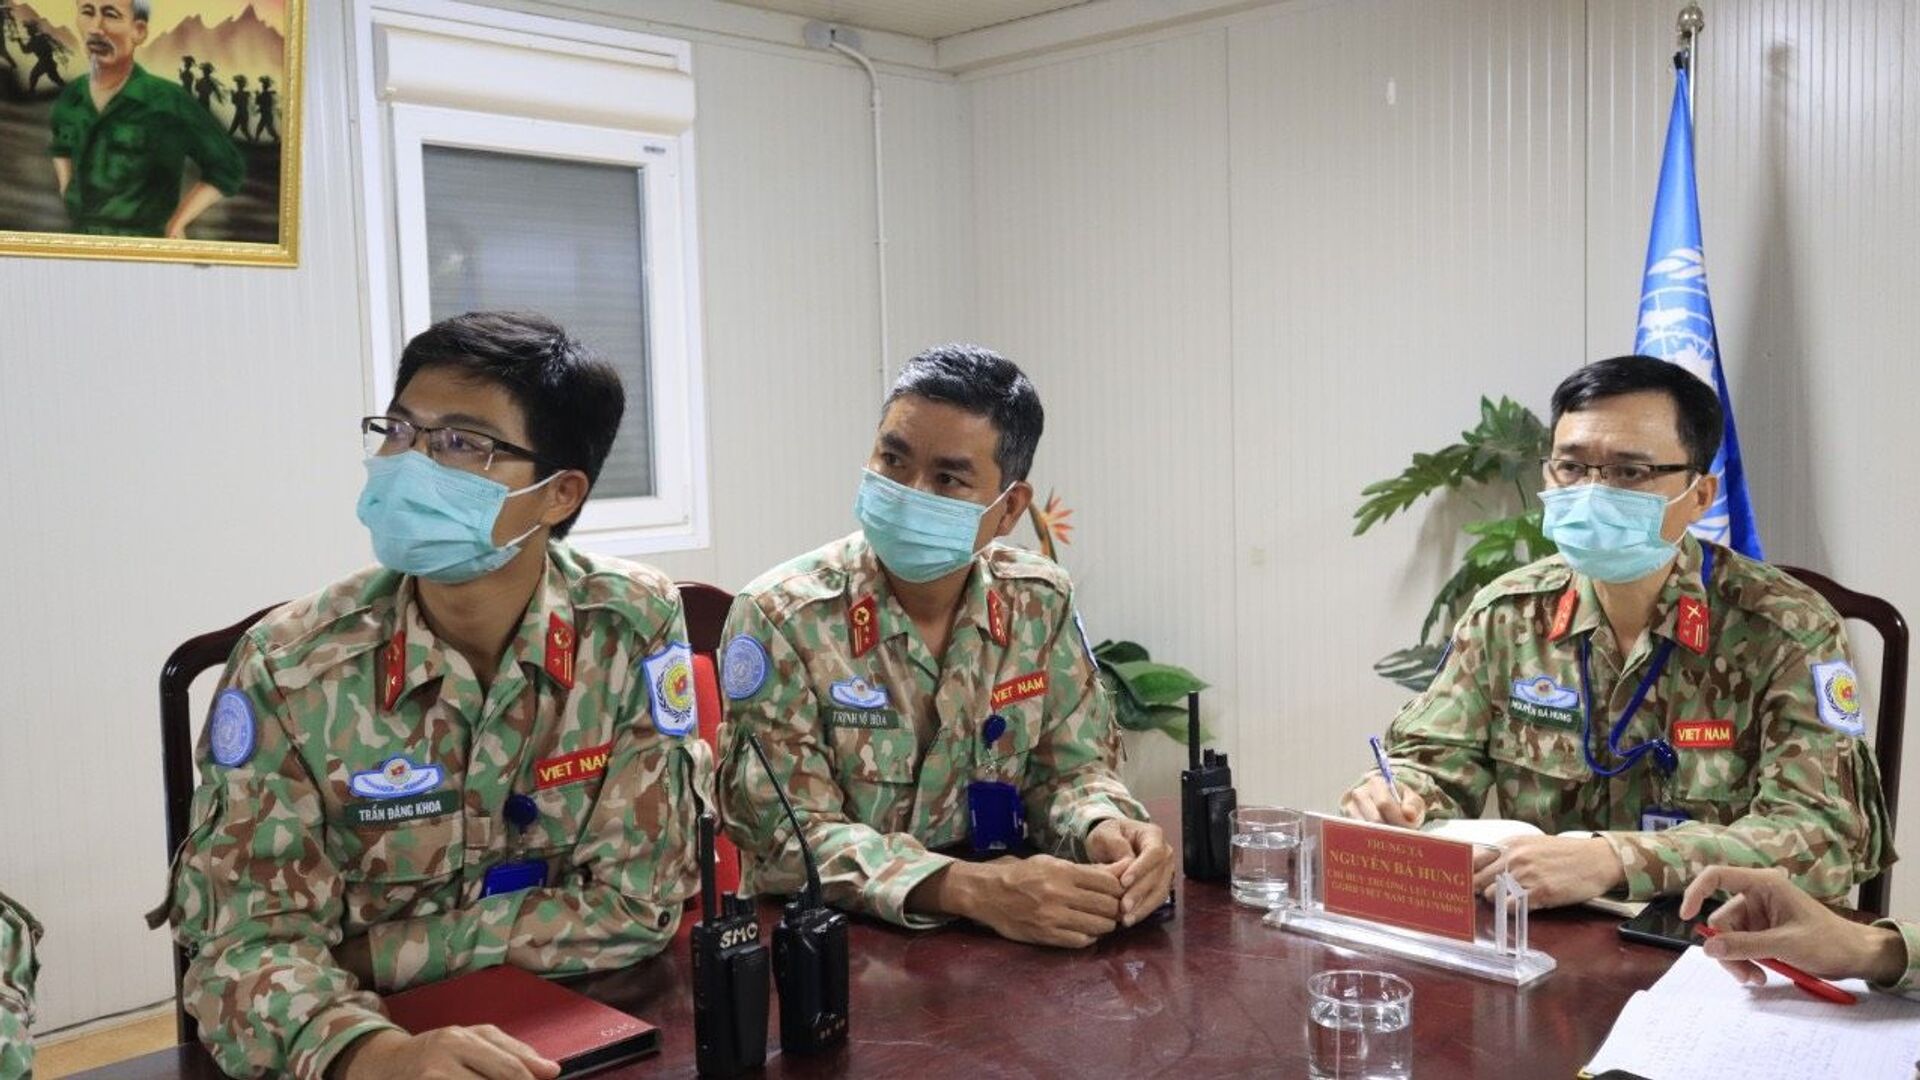 Lần đầu tiên phối hợp Tập huấn trực tuyến nâng cao năng lực y tế giữa 2 bệnh viện cấp 2 Việt Nam và Ấn Độ hoạt động tại Nam Sudan. - Sputnik Việt Nam, 1920, 28.07.2021